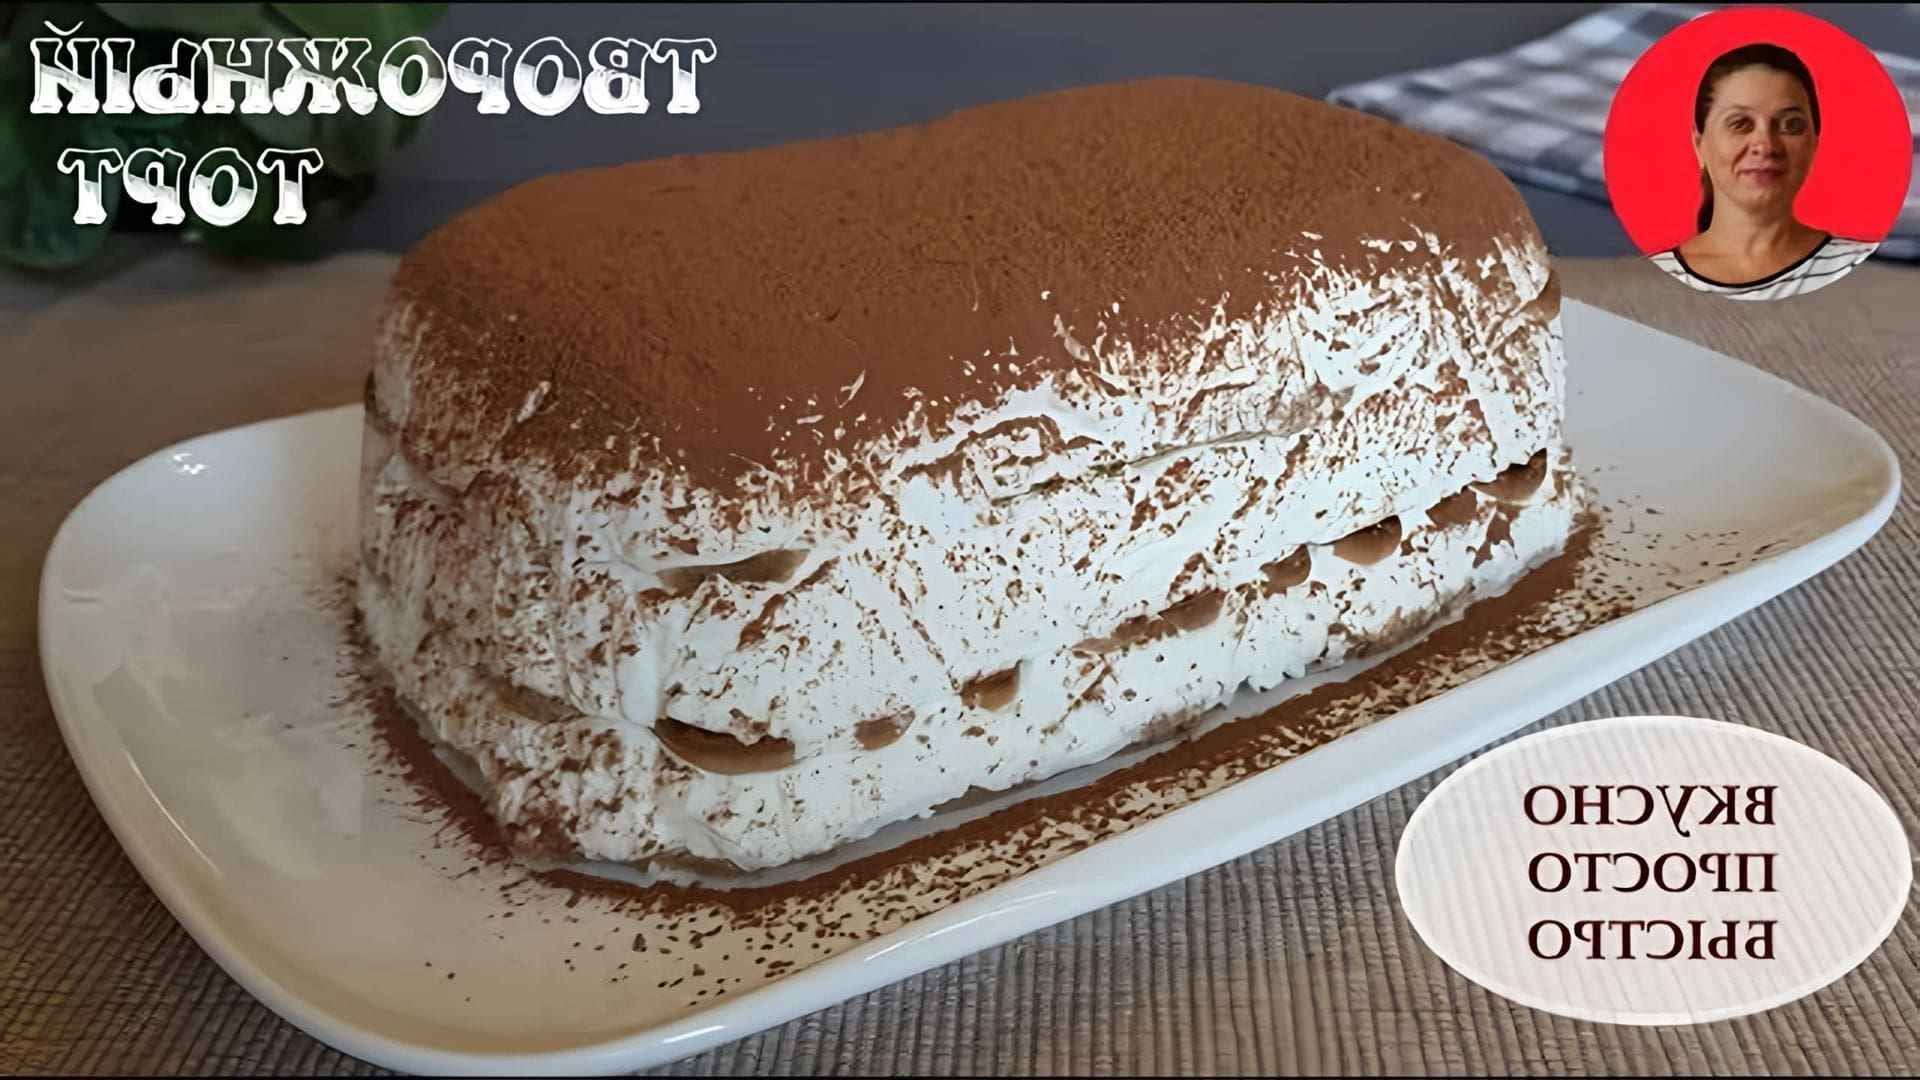 В этом видео Наталия показывает, как приготовить творожный торт по мотивам знаменитого десерта Тирамису